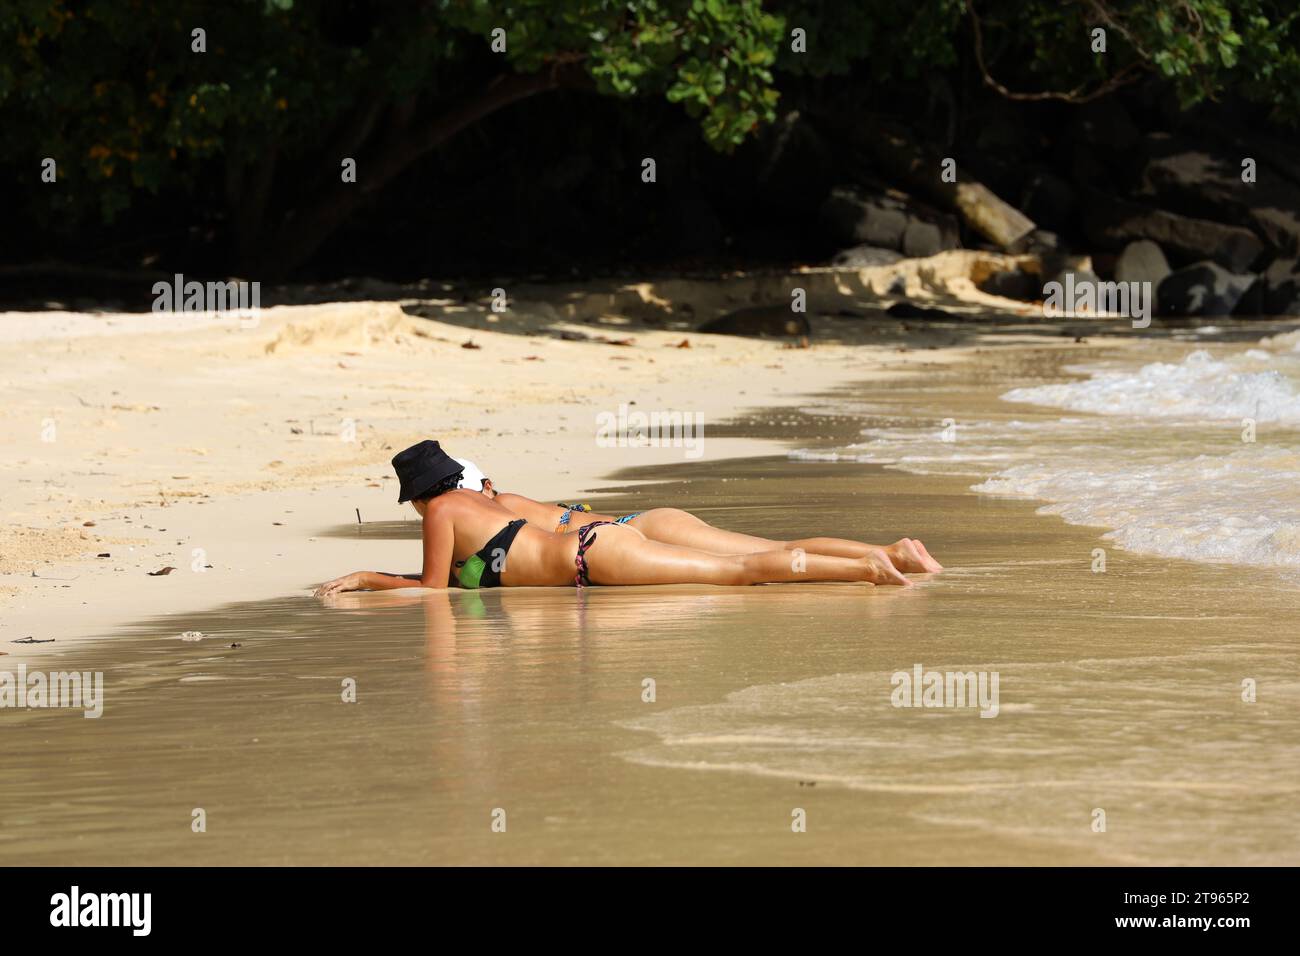 Le donne in bikini prendono il sole sdraiate su una spiaggia sabbiosa su uno sfondo roccioso. Concetto di relax e di sole, vacanza sulla costa tropicale del mare Foto Stock